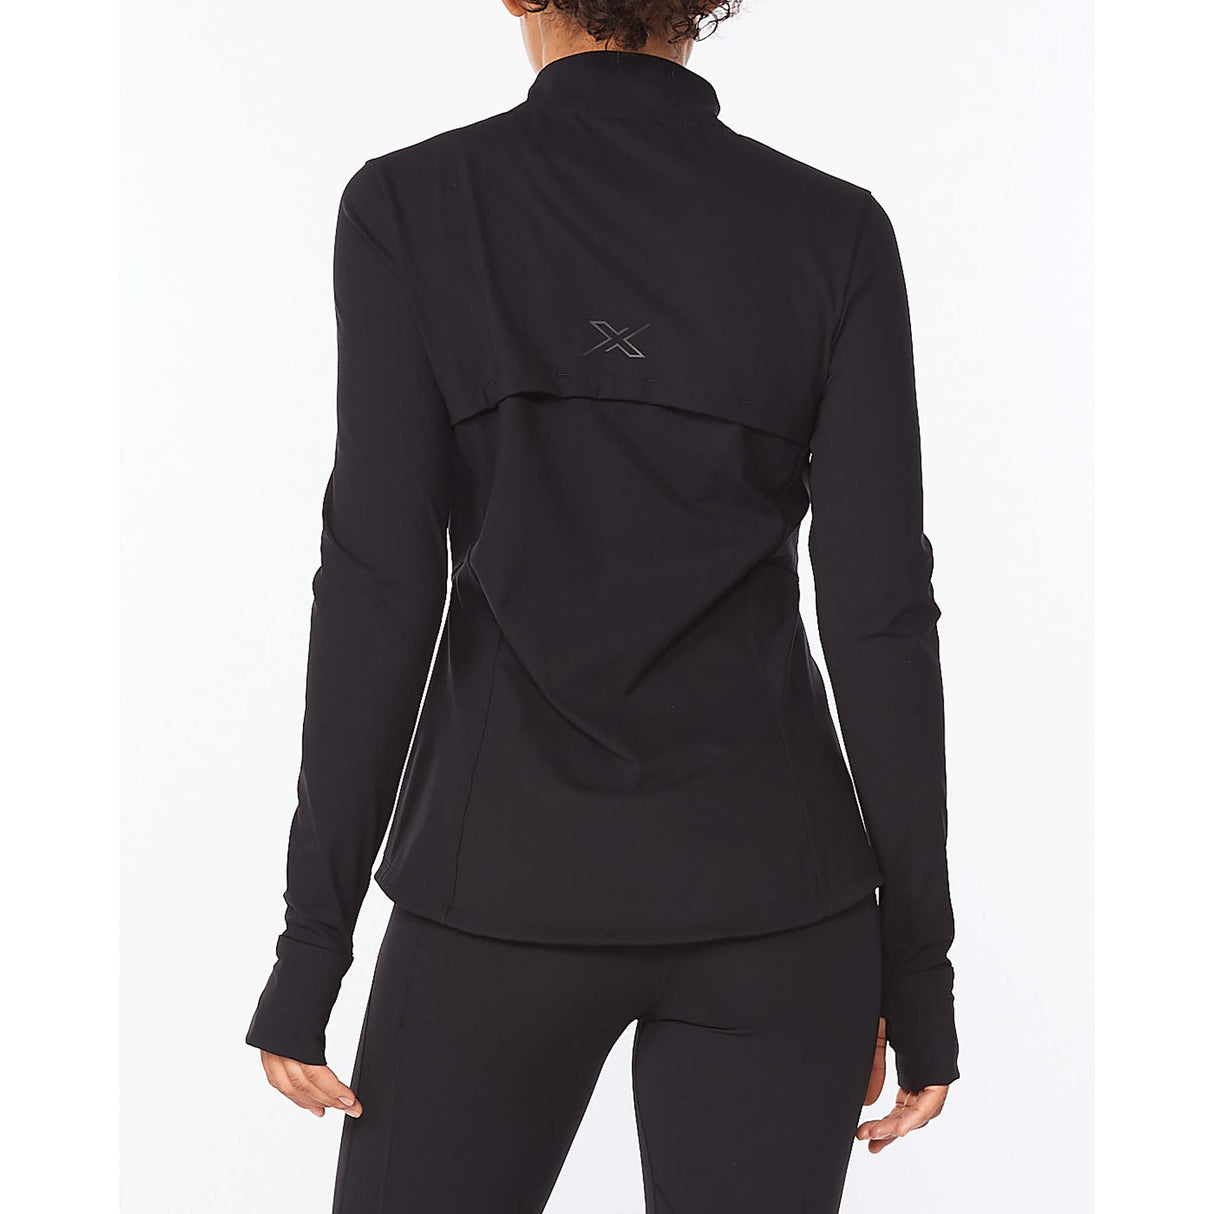 2XU Form Jacket veste sport noir pour femme dos